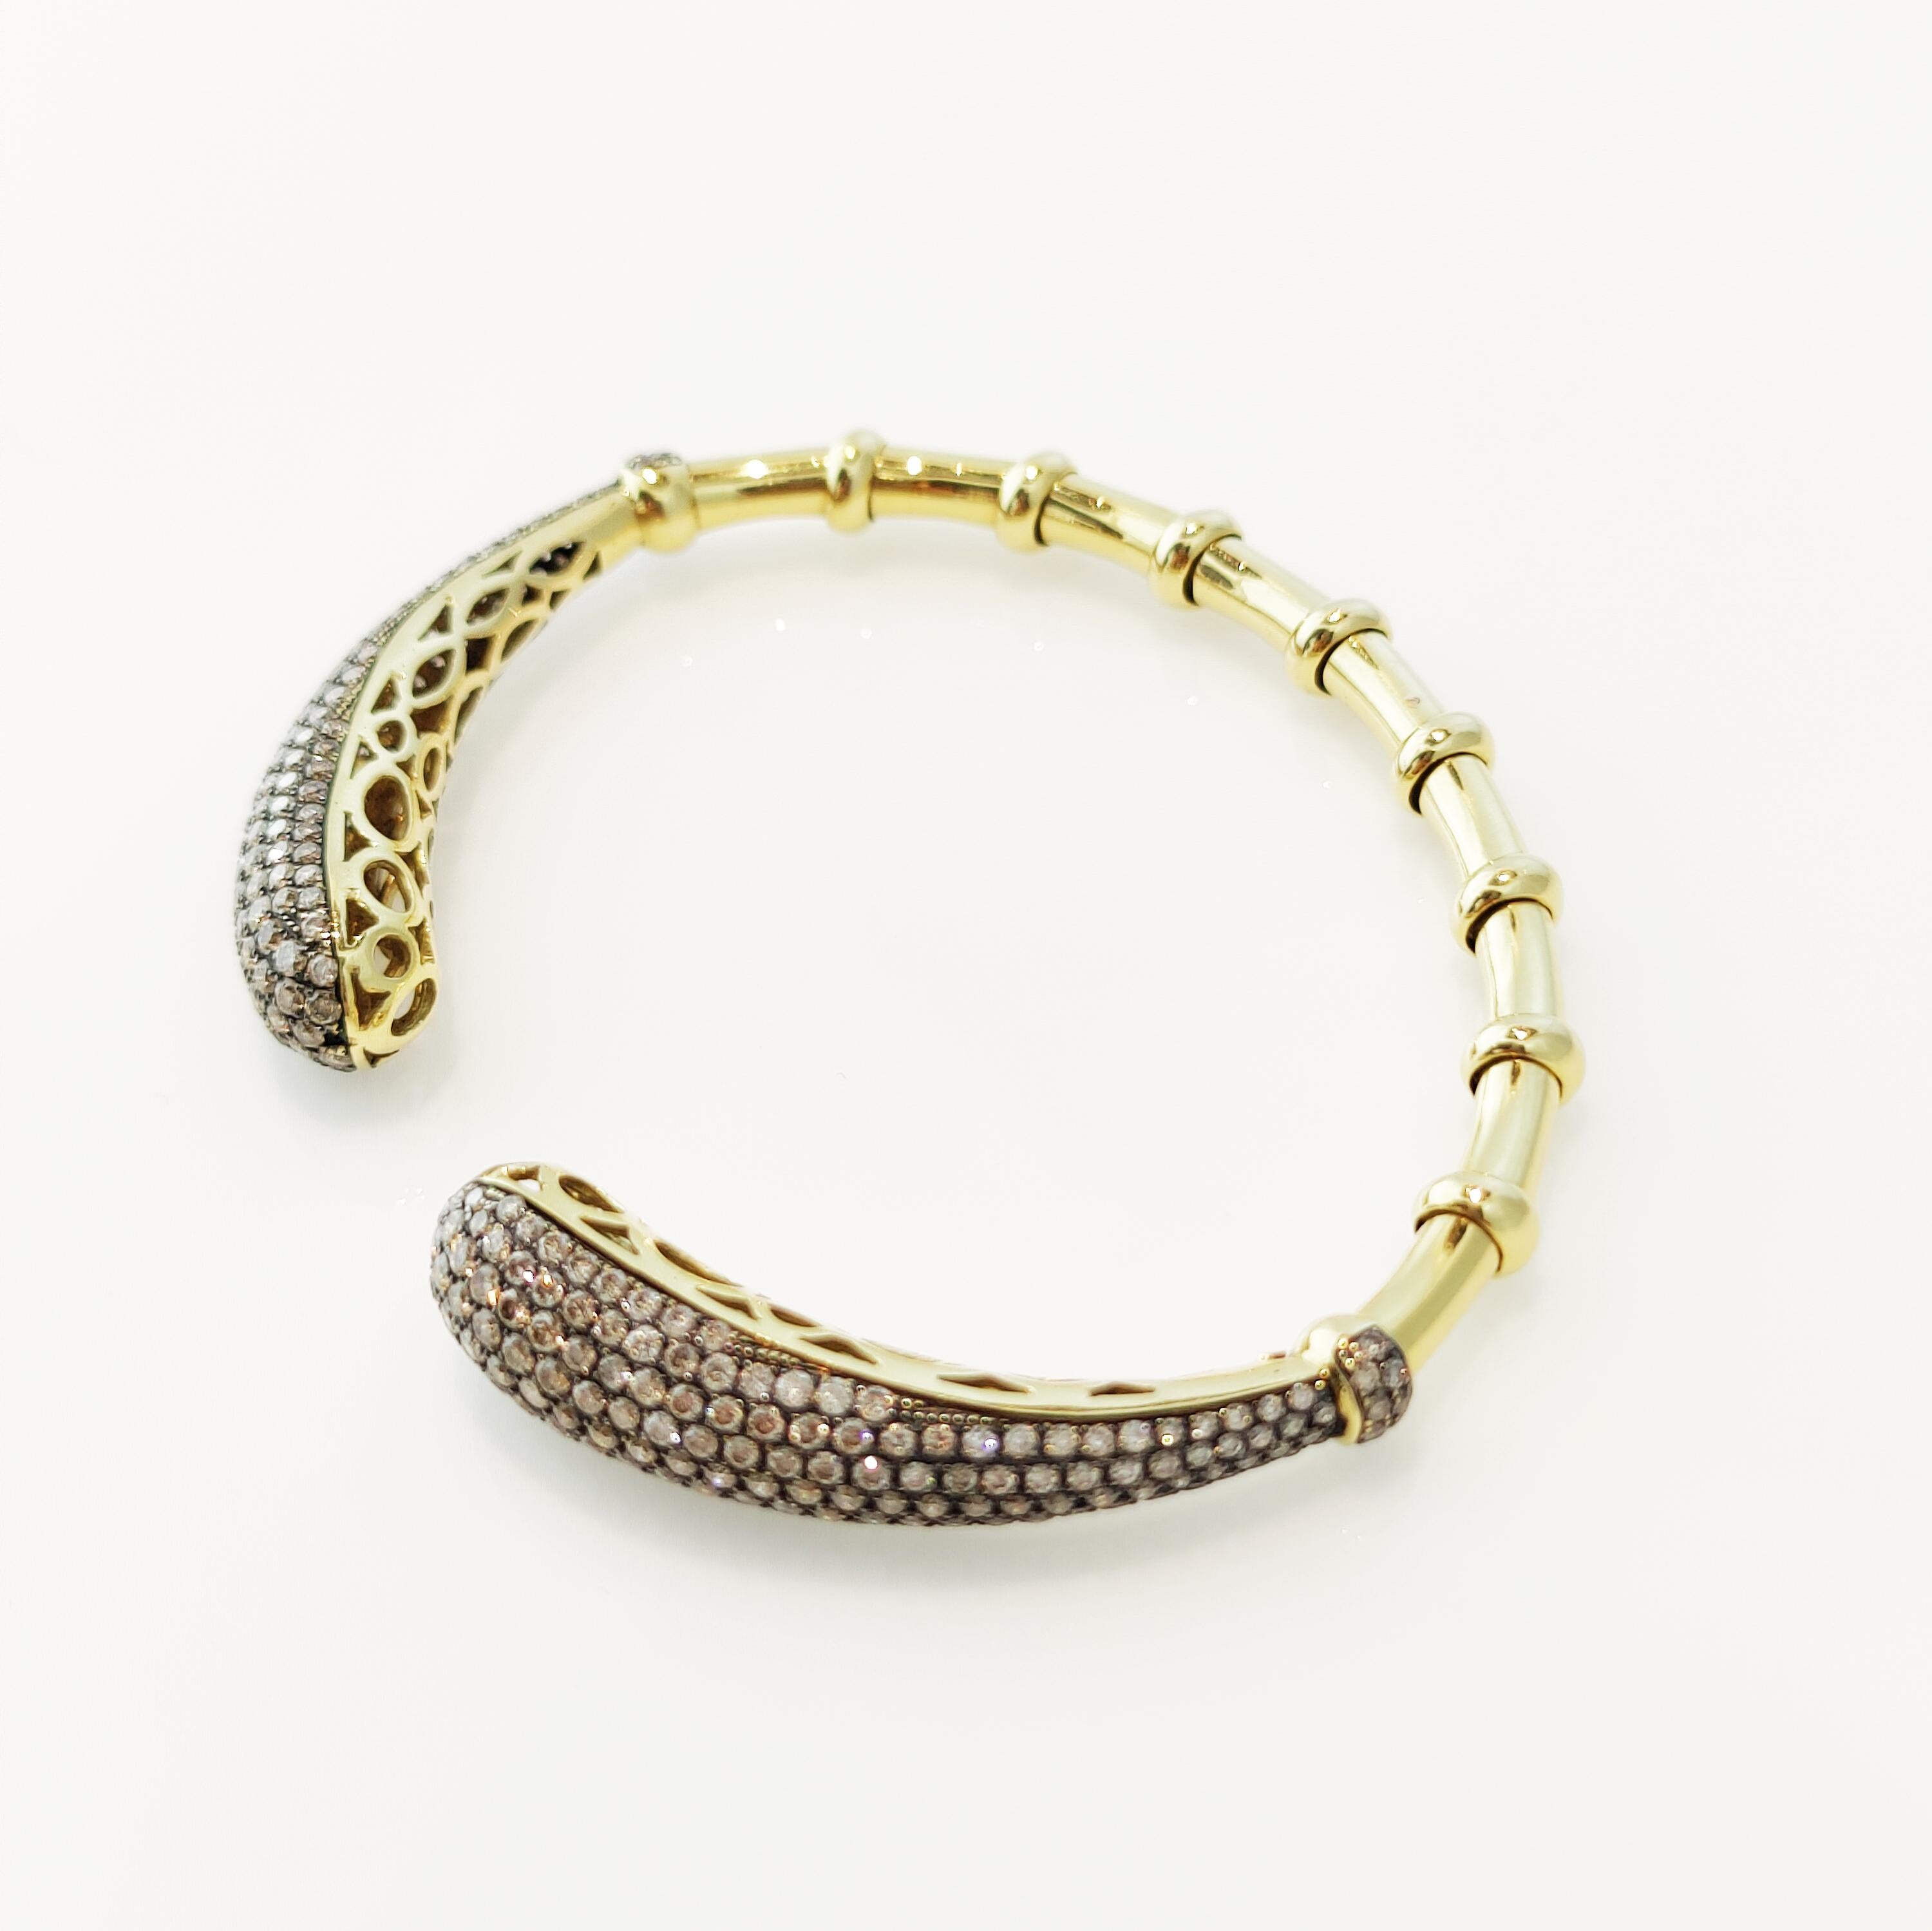 Ce séduisant bracelet en bambou à diamants bruns en or jaune 18 carats convainc surtout les femmes qui préfèrent l'élégance sportive et les bijoux portables en toutes occasions.

Un total de 5,3 carats de diamants sont des diamants bruns naturels